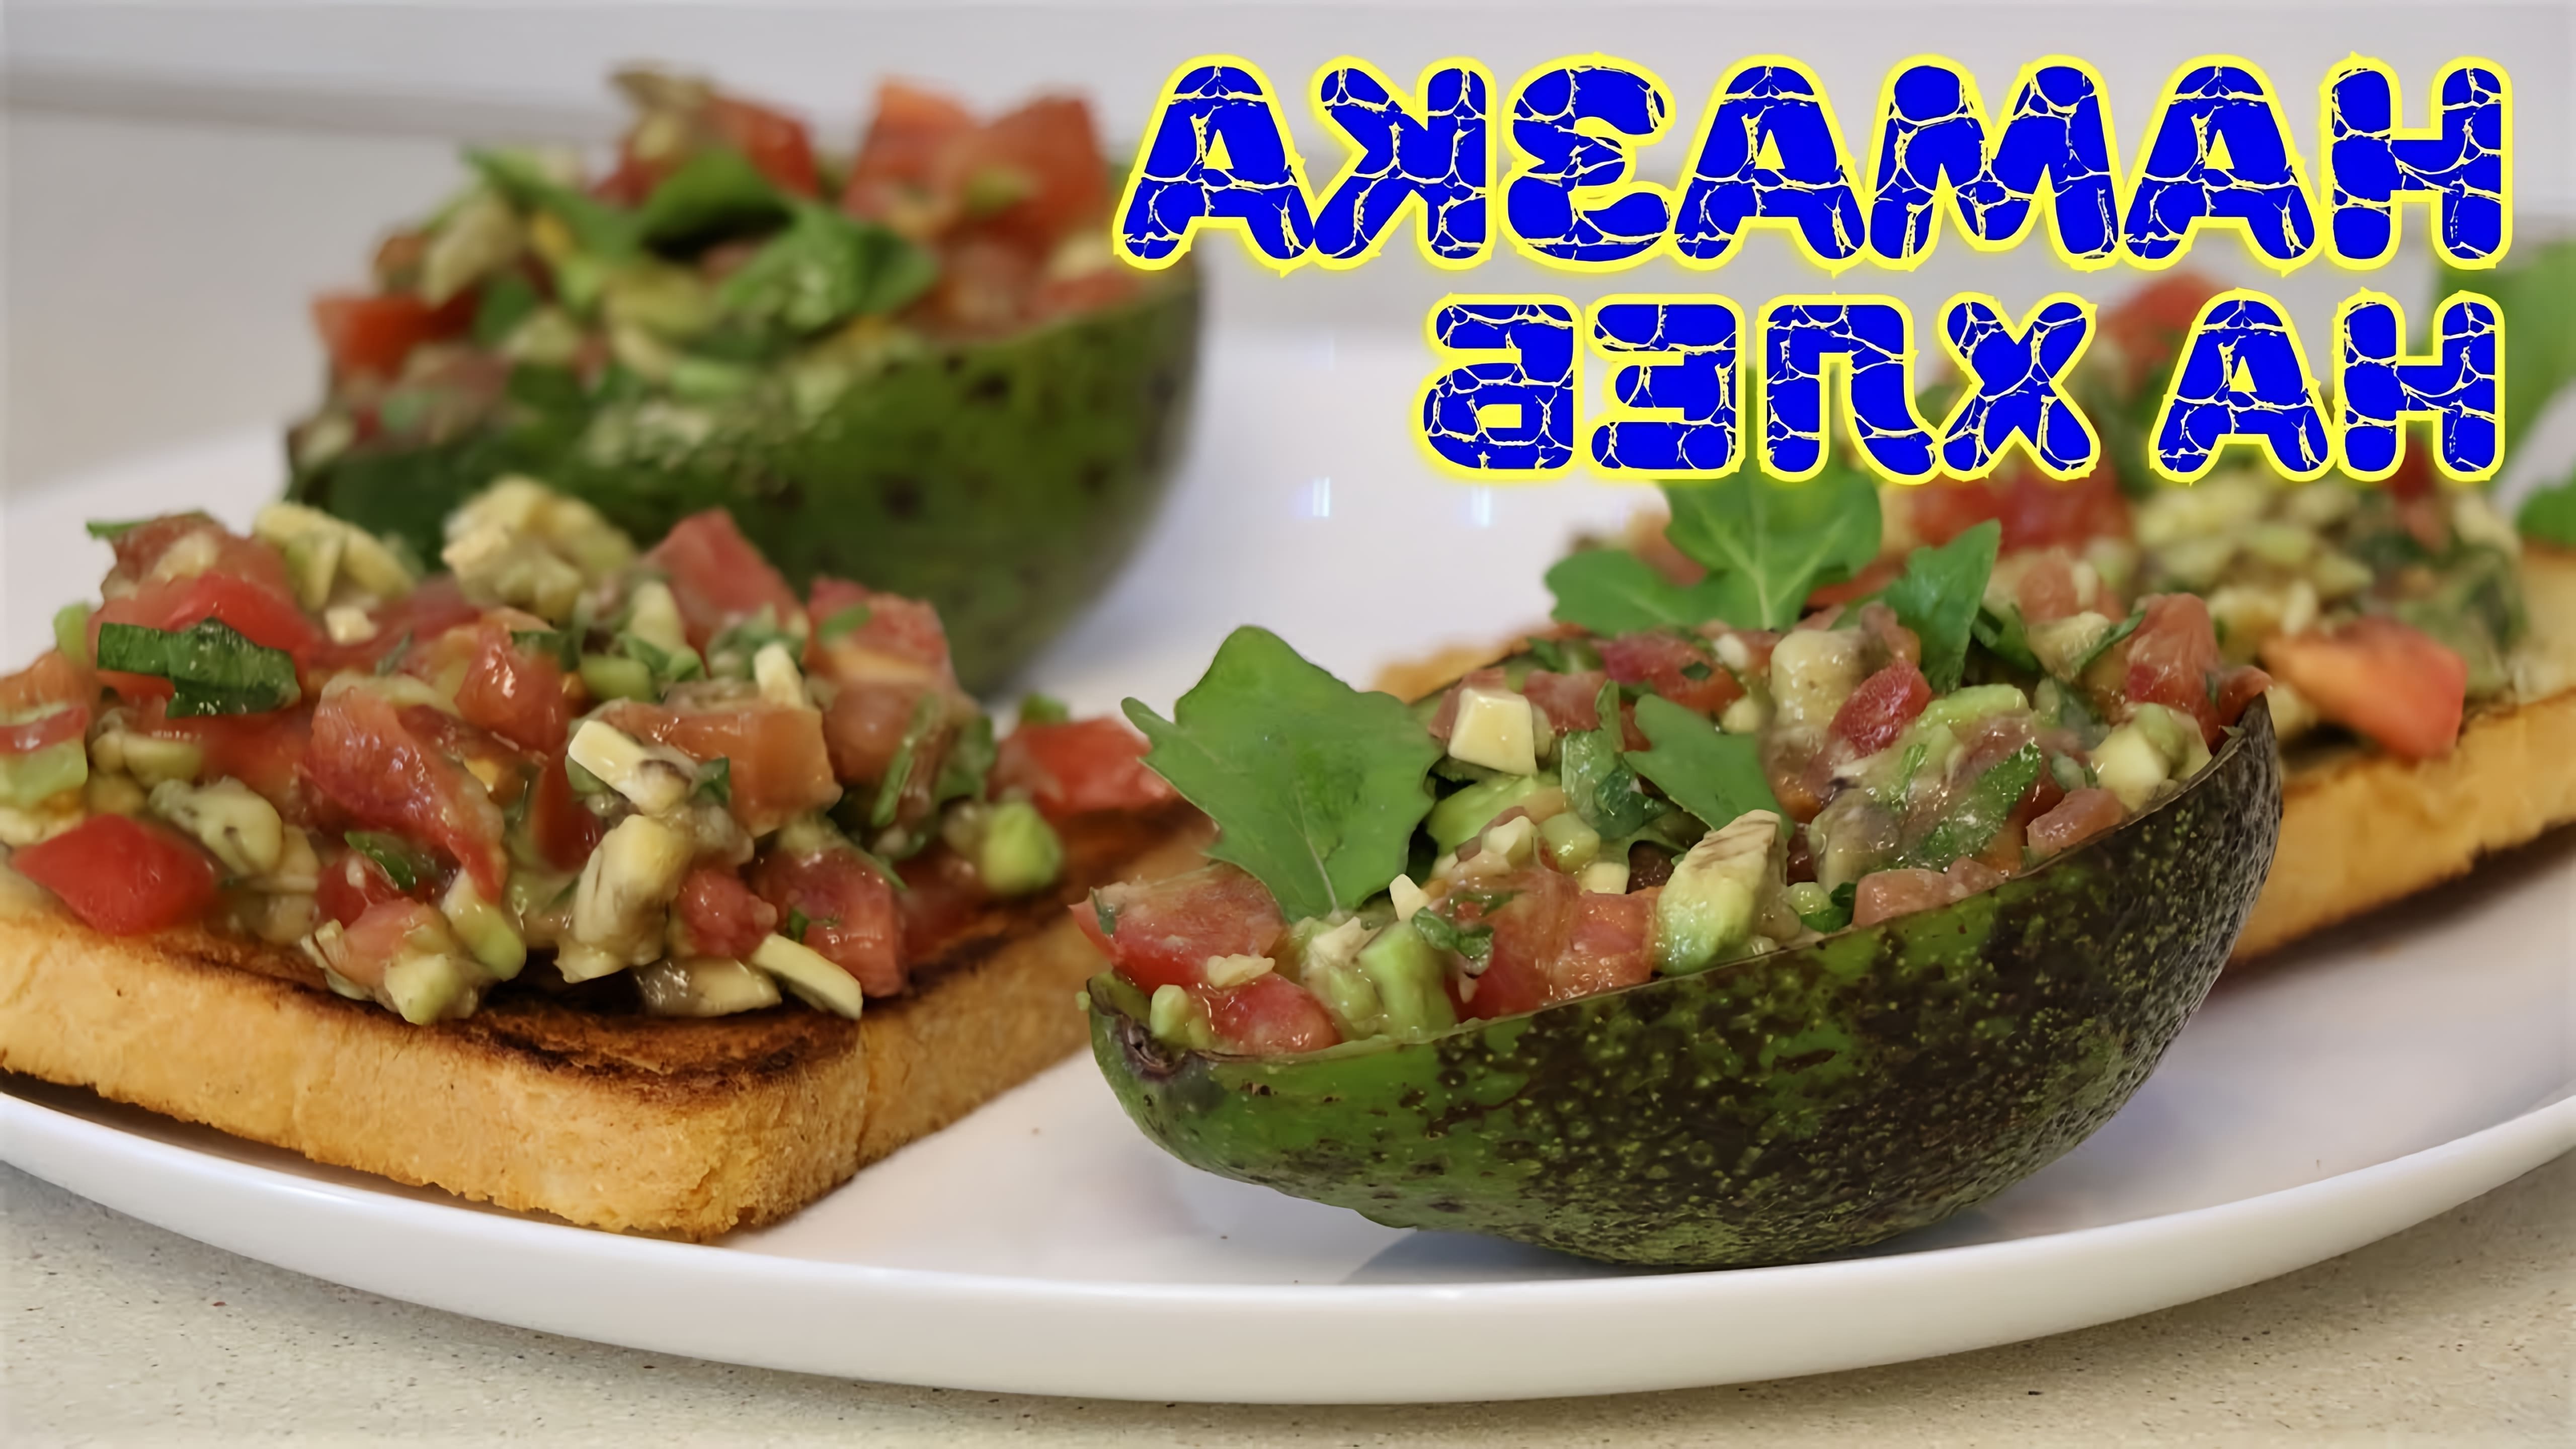 В этом видео демонстрируется рецепт вкусной намазки на хлеб, состоящей из авокадо, помидора и петрушки